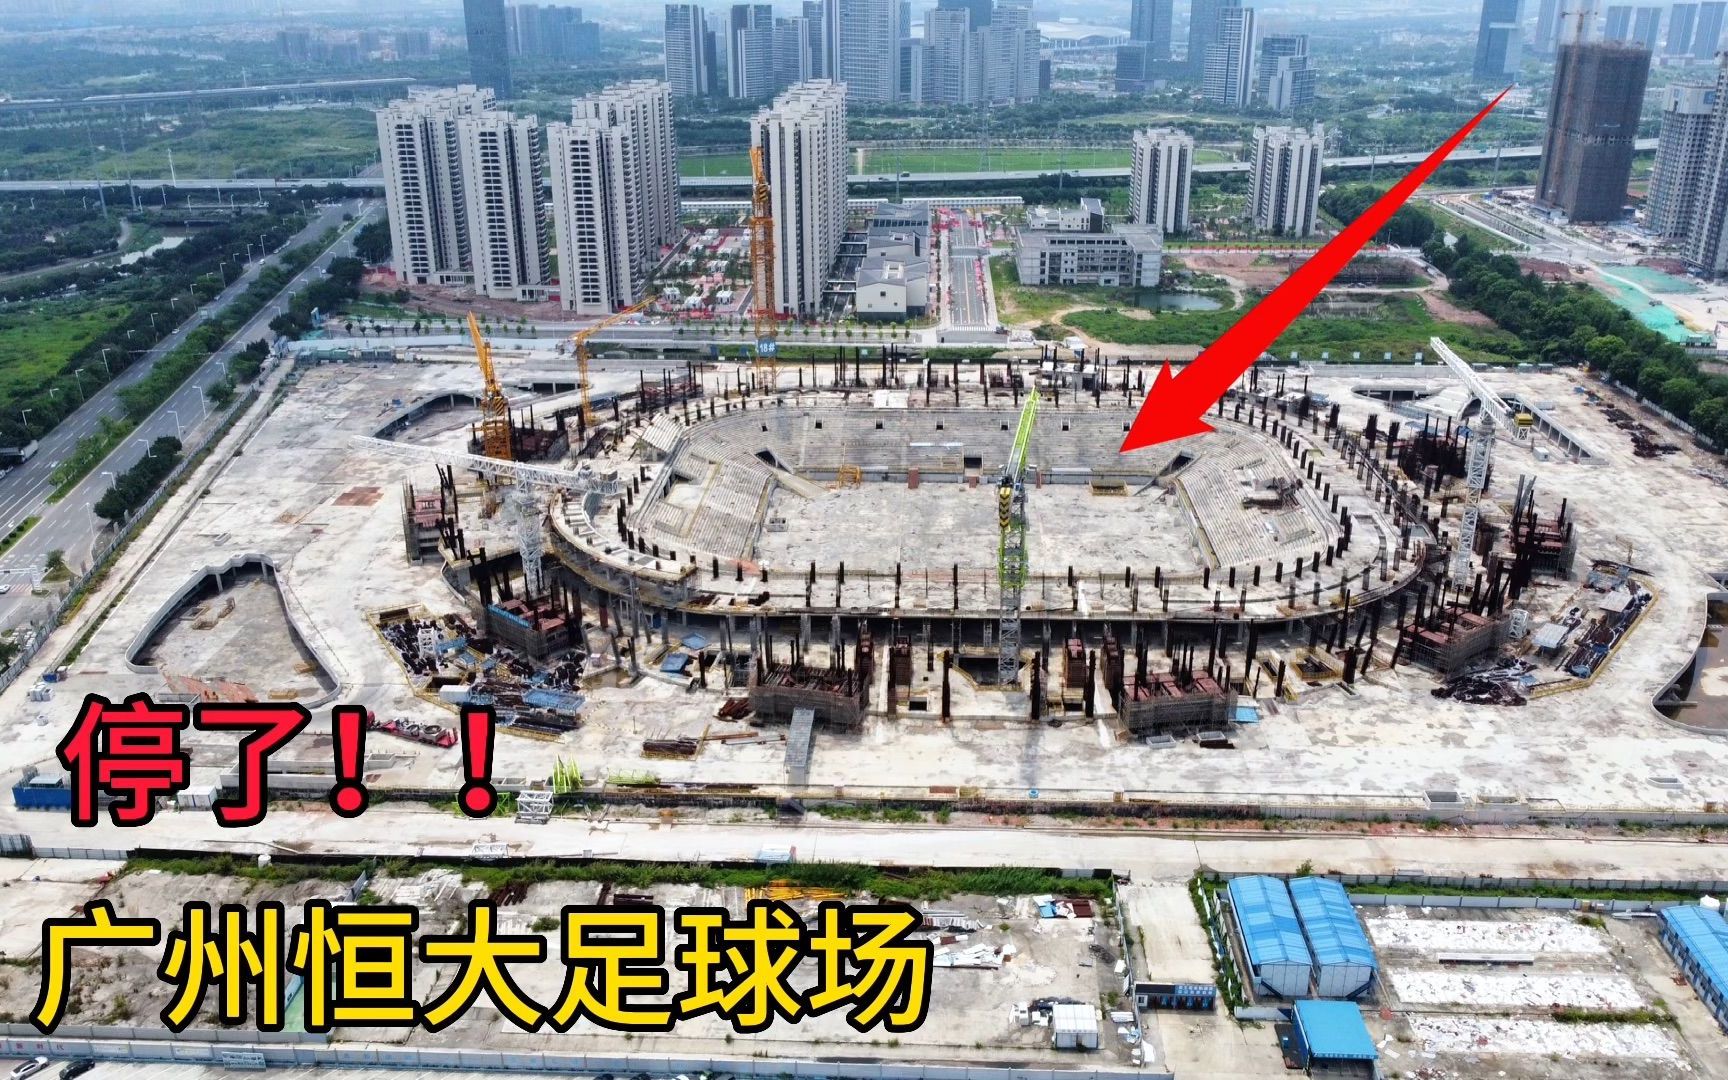 参观广州恒大足球场,当年投资120亿建造,如今工地十分荒凉!